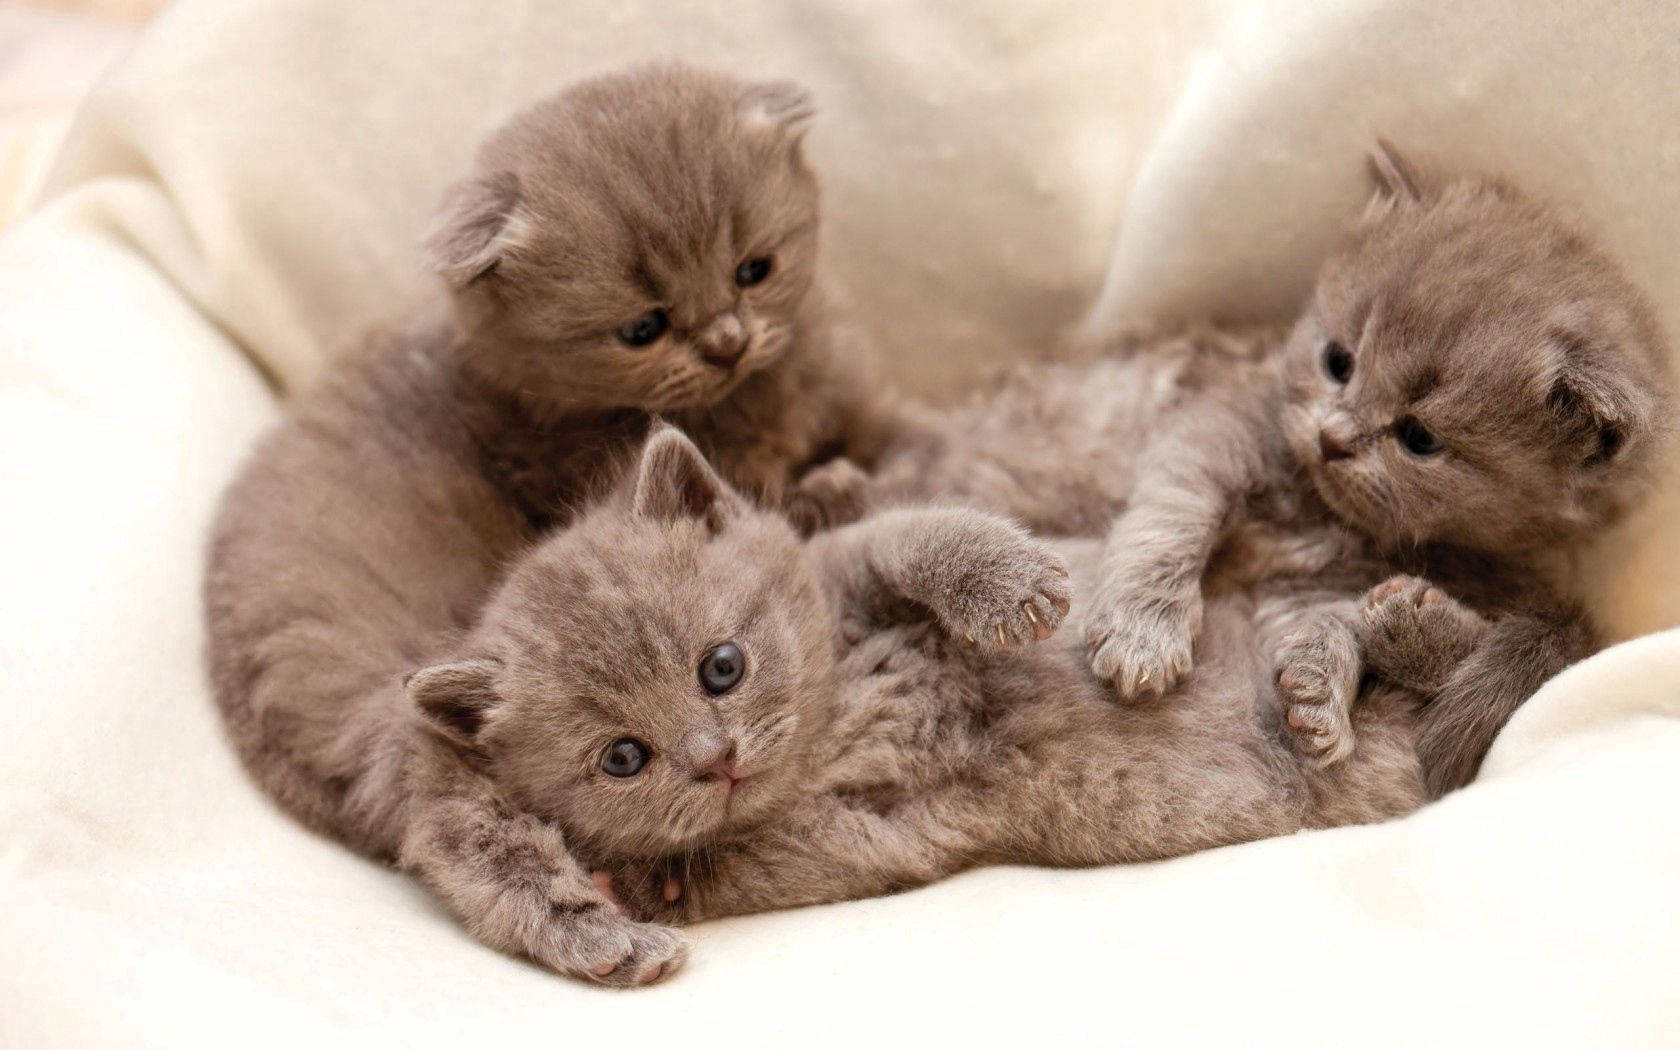 Two cute gray kittens snuggling in a basket Wallpaper